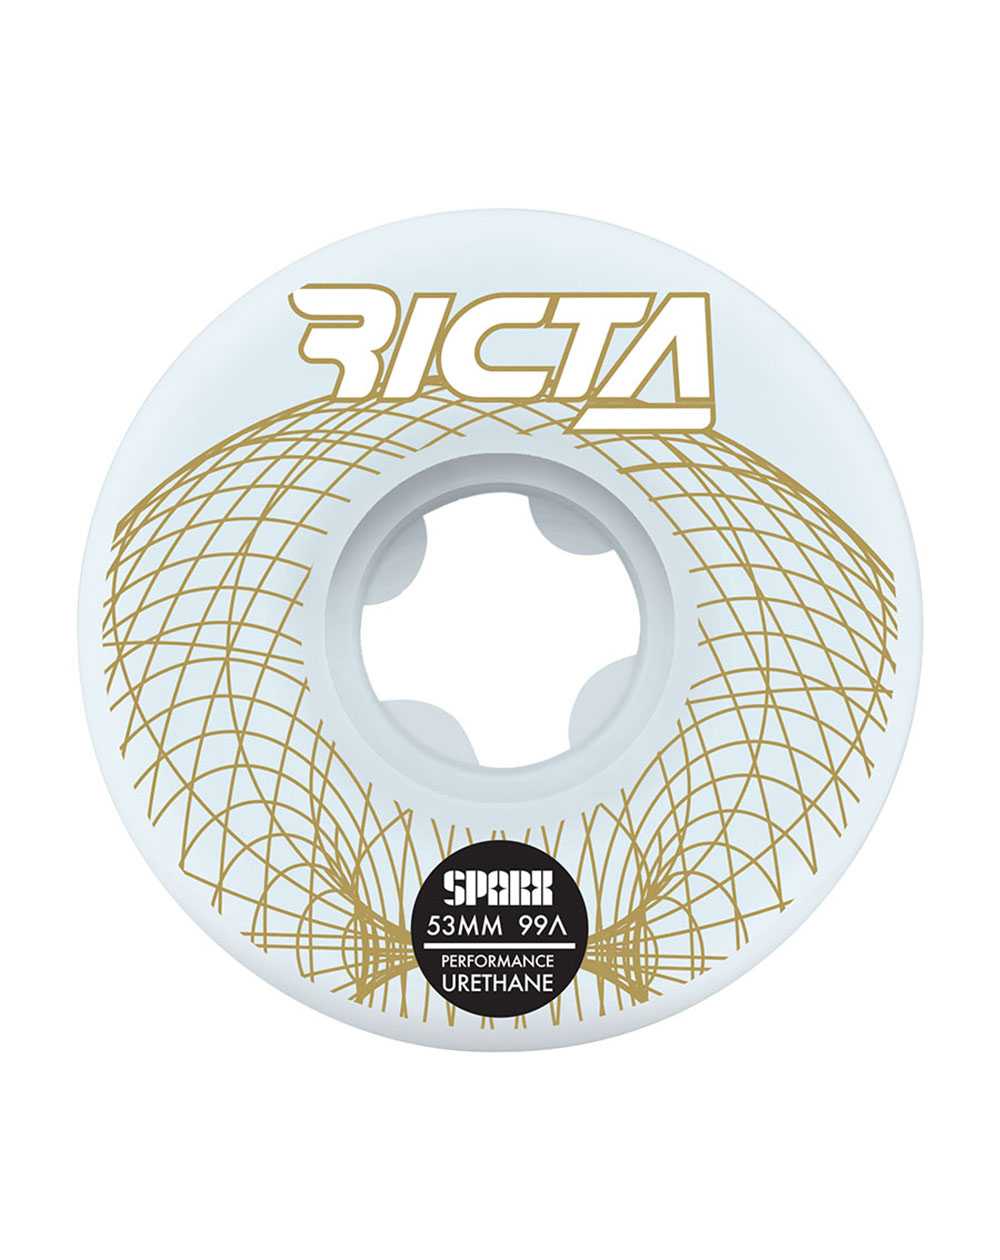 Ricta Rodas Skate Wireframe Sparx 53mm 99A 4 peças